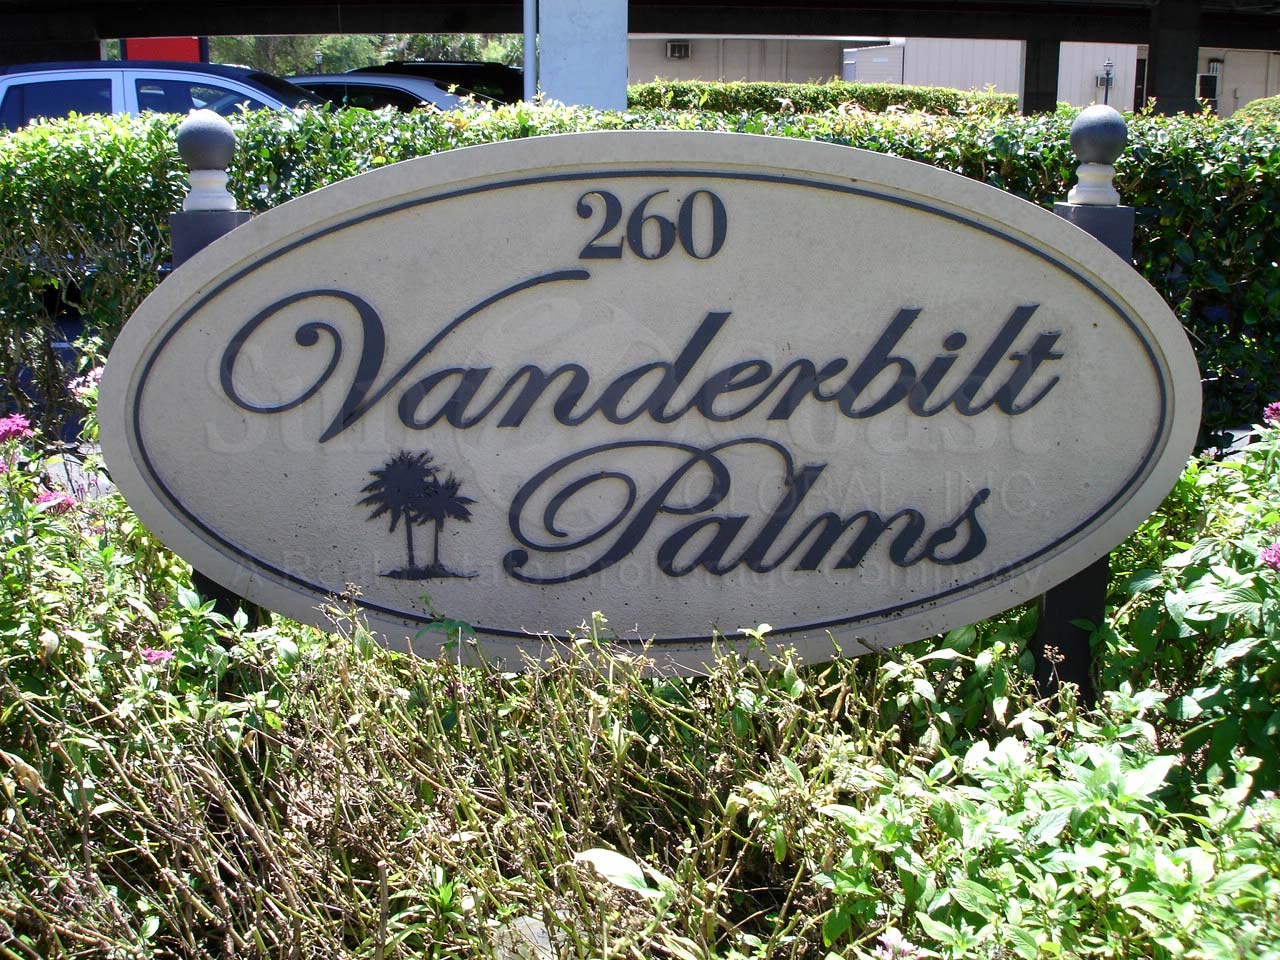 Vanderbilt Palms Signage